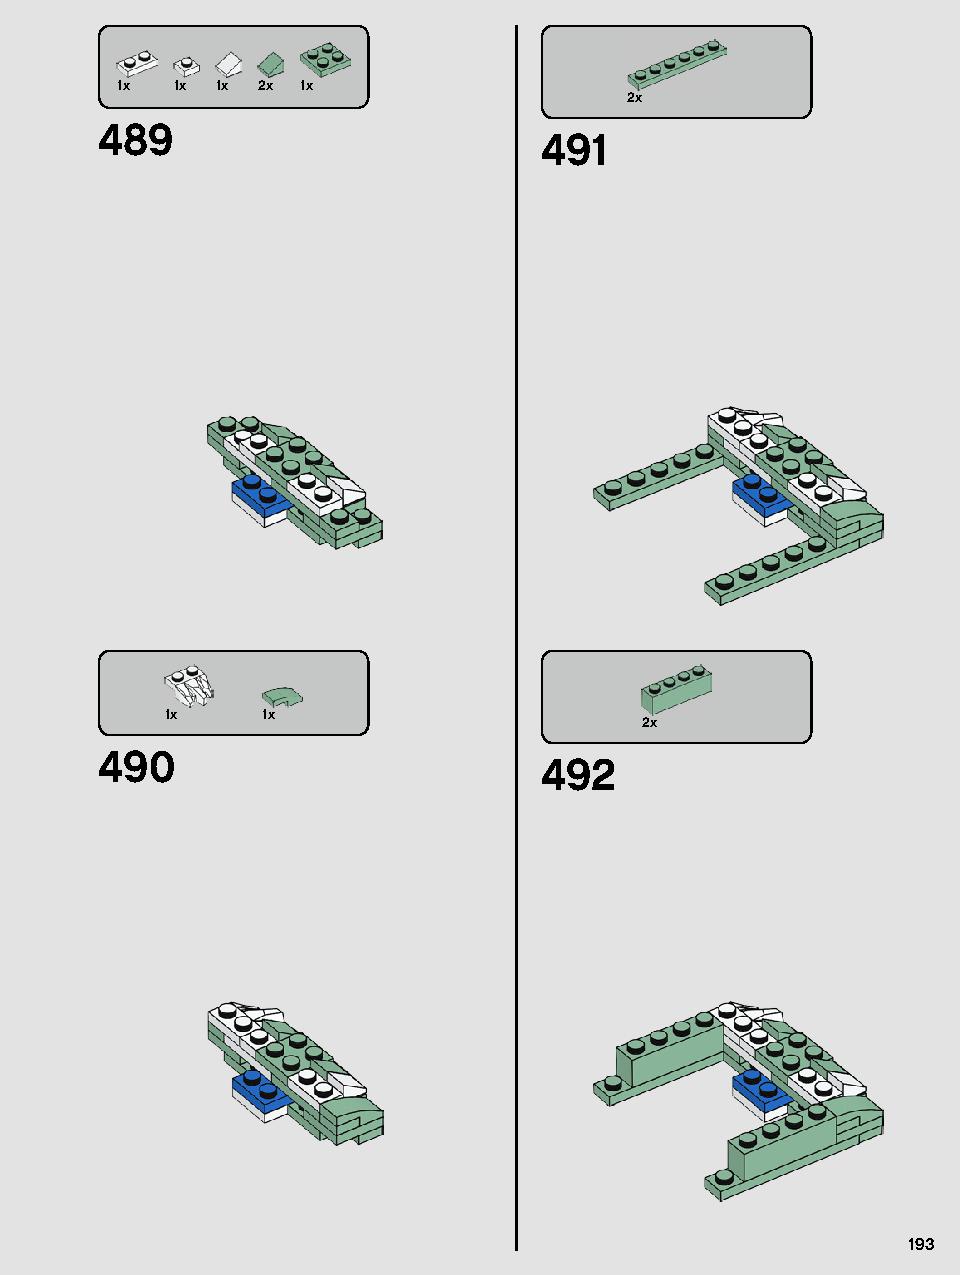 ヨーダ™ 75255 レゴの商品情報 レゴの説明書・組立方法 193 page